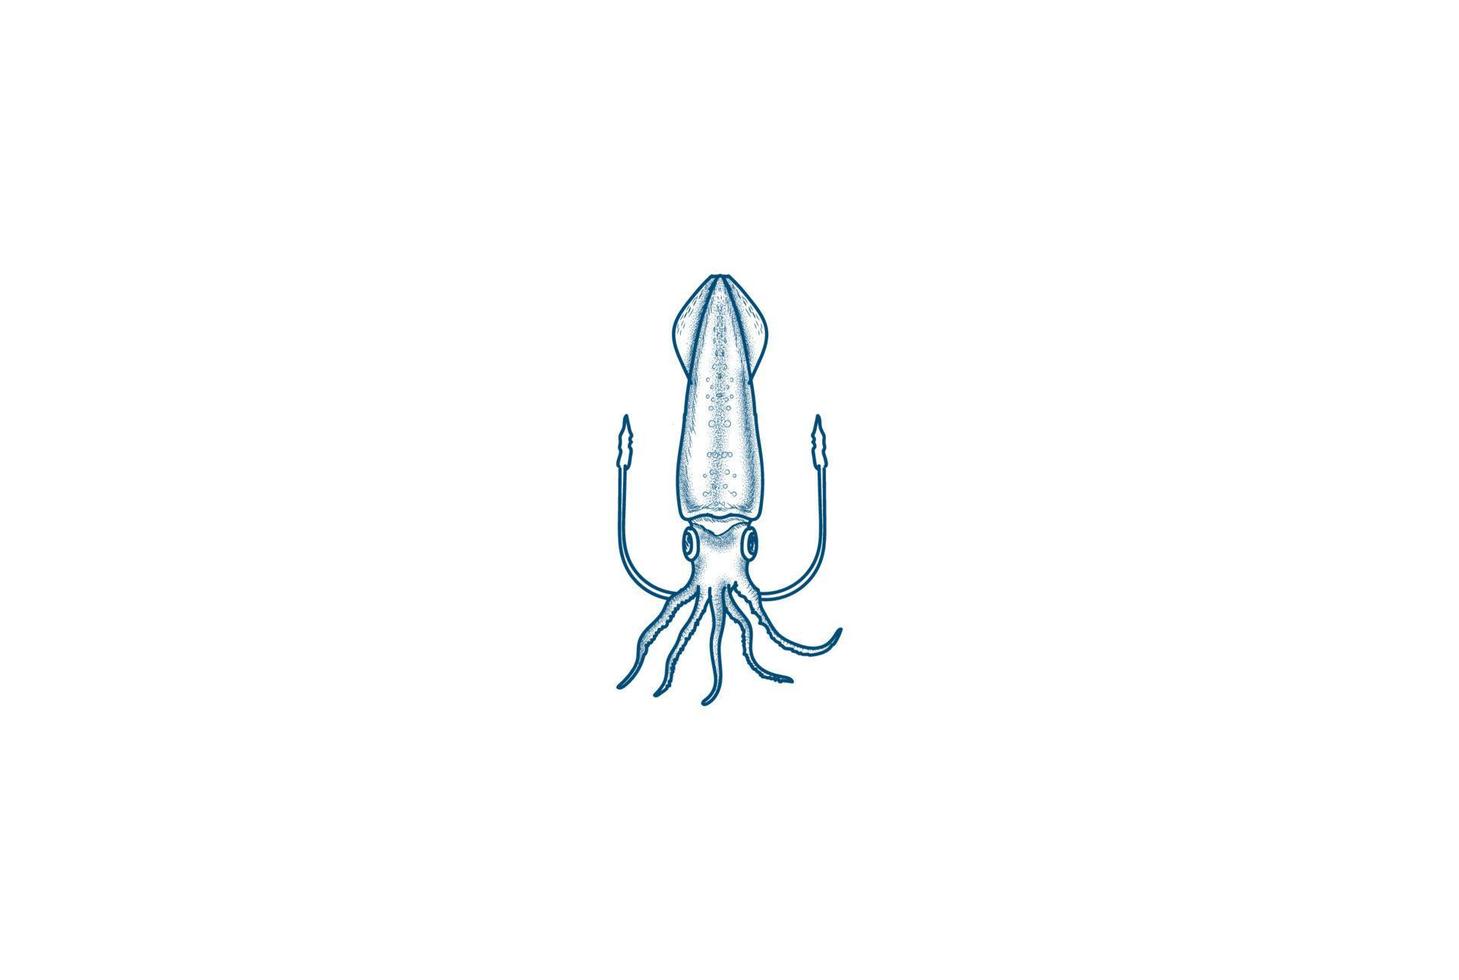 Vintage Retro Squid Cuttlefish Badge Emblem Stamp for Seafood Restaurant or Product Label Logo Design Vector